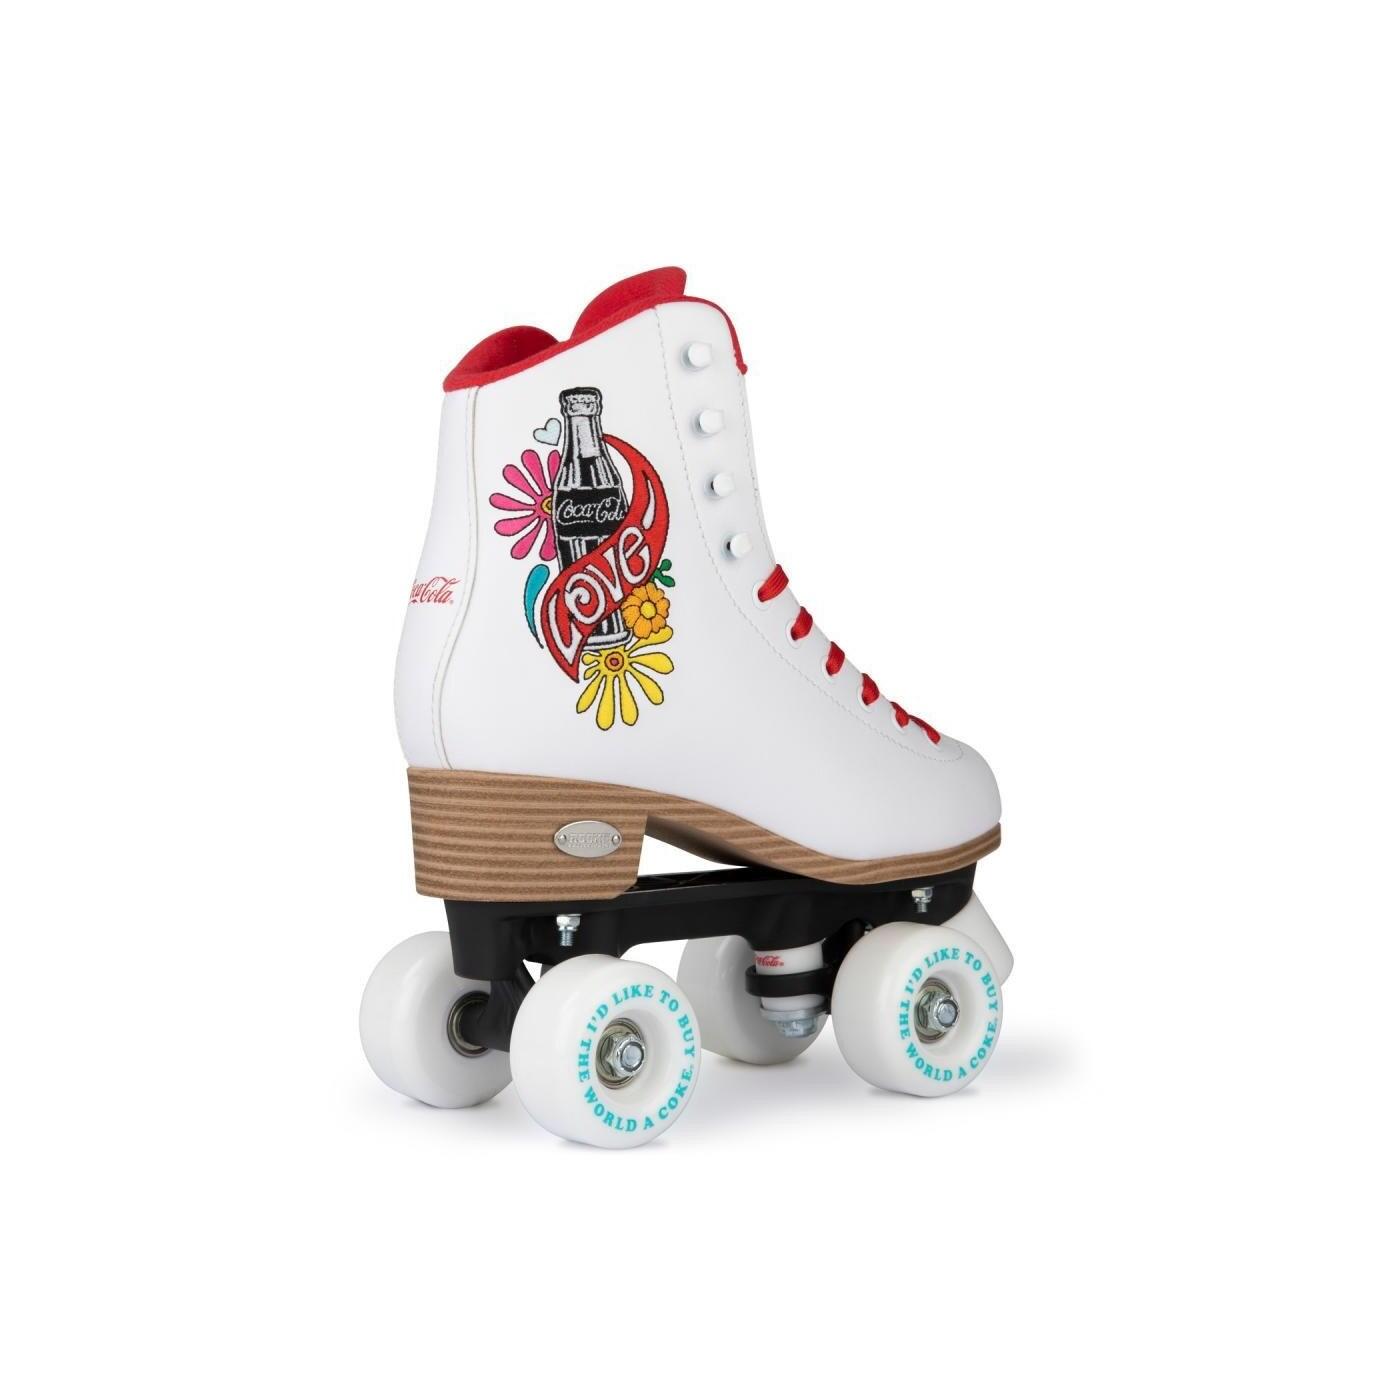 ROOKIE Coca-Cola Love Quad Roller Skates